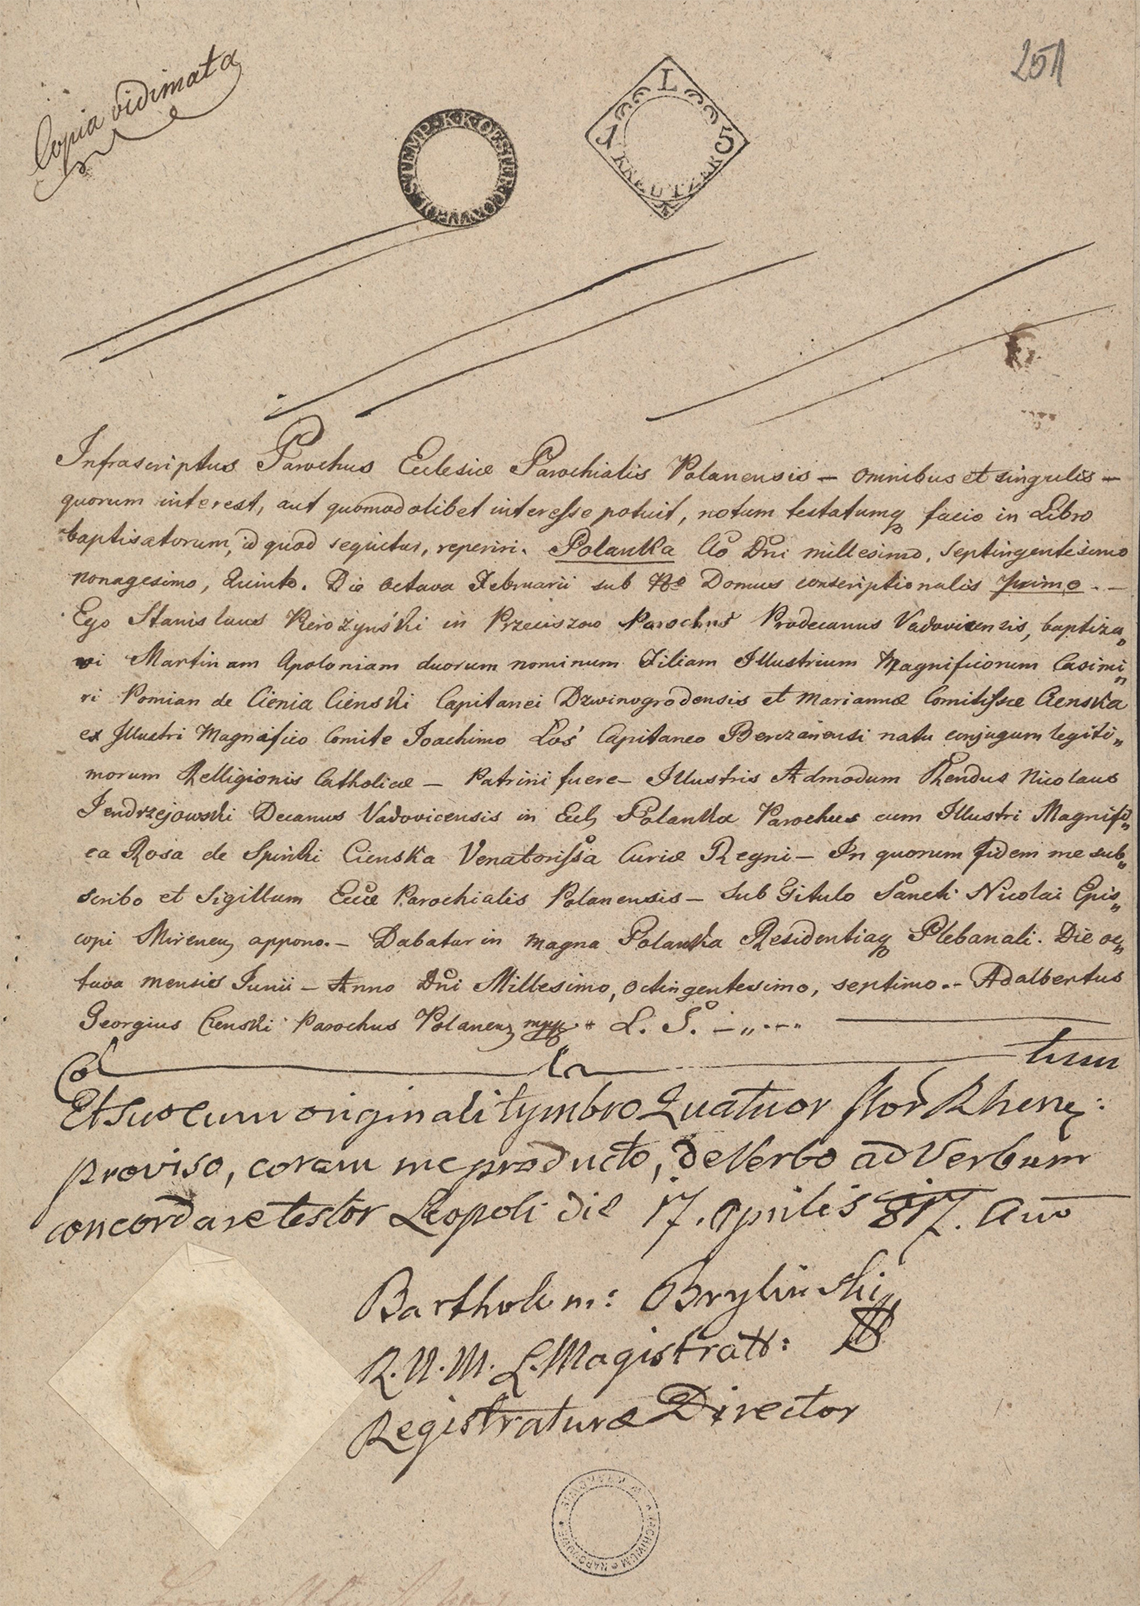 Alegaty do małżeństwa Stanisław Gostkowski & Martyna Apolonia Cieński (03.11.1817 r.) (4)